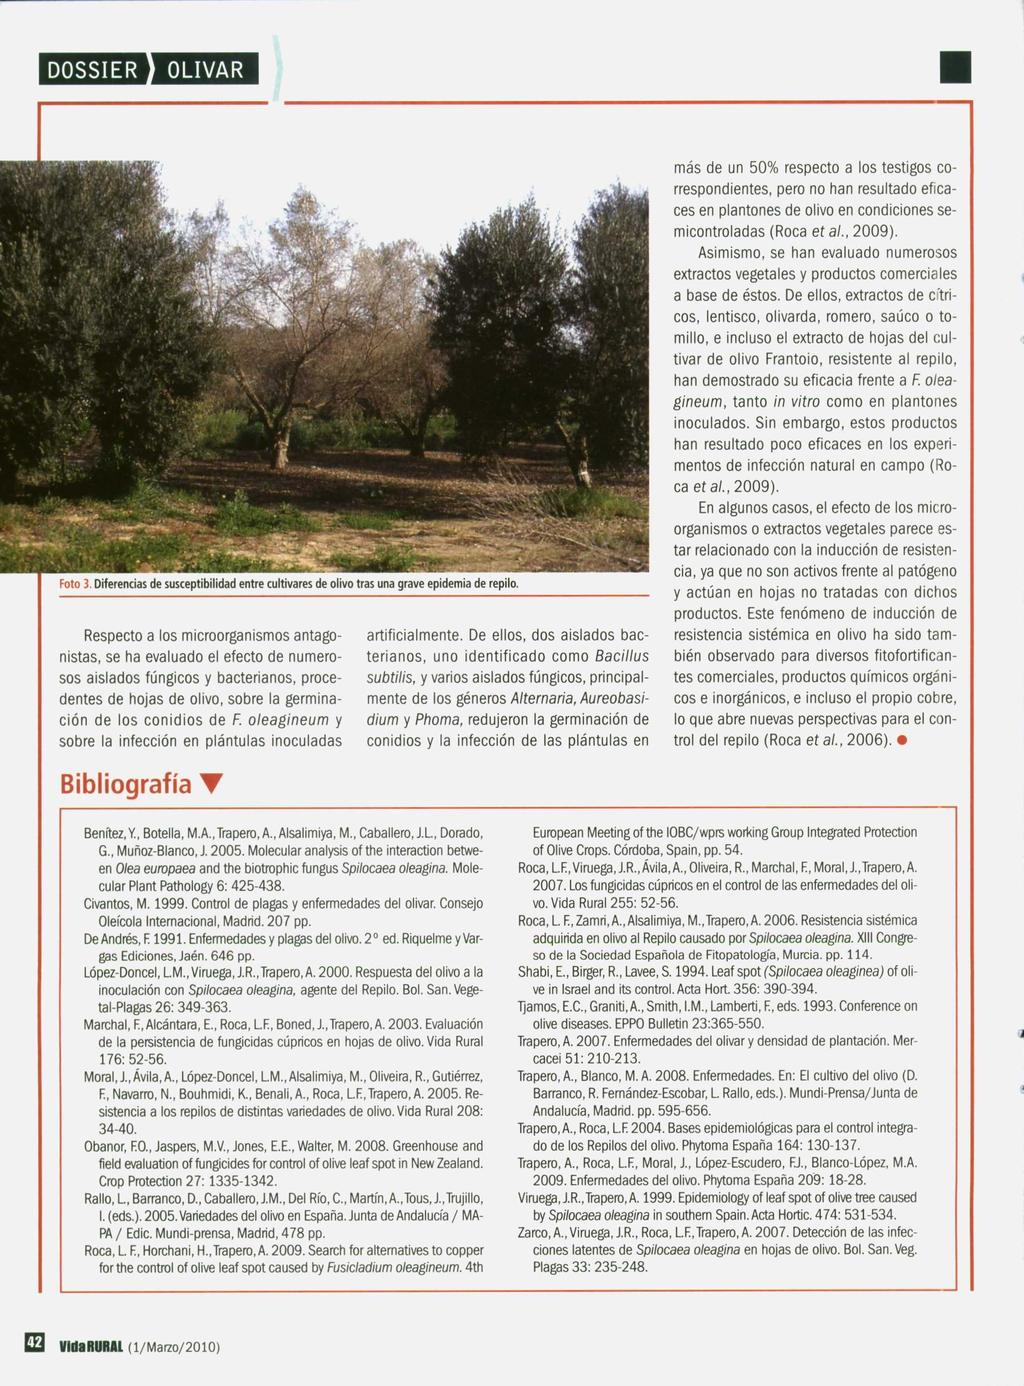 Foto 3. Diferencias de susceptibilidad entre cultivares de olivo tras una grave epidemia de repilo.